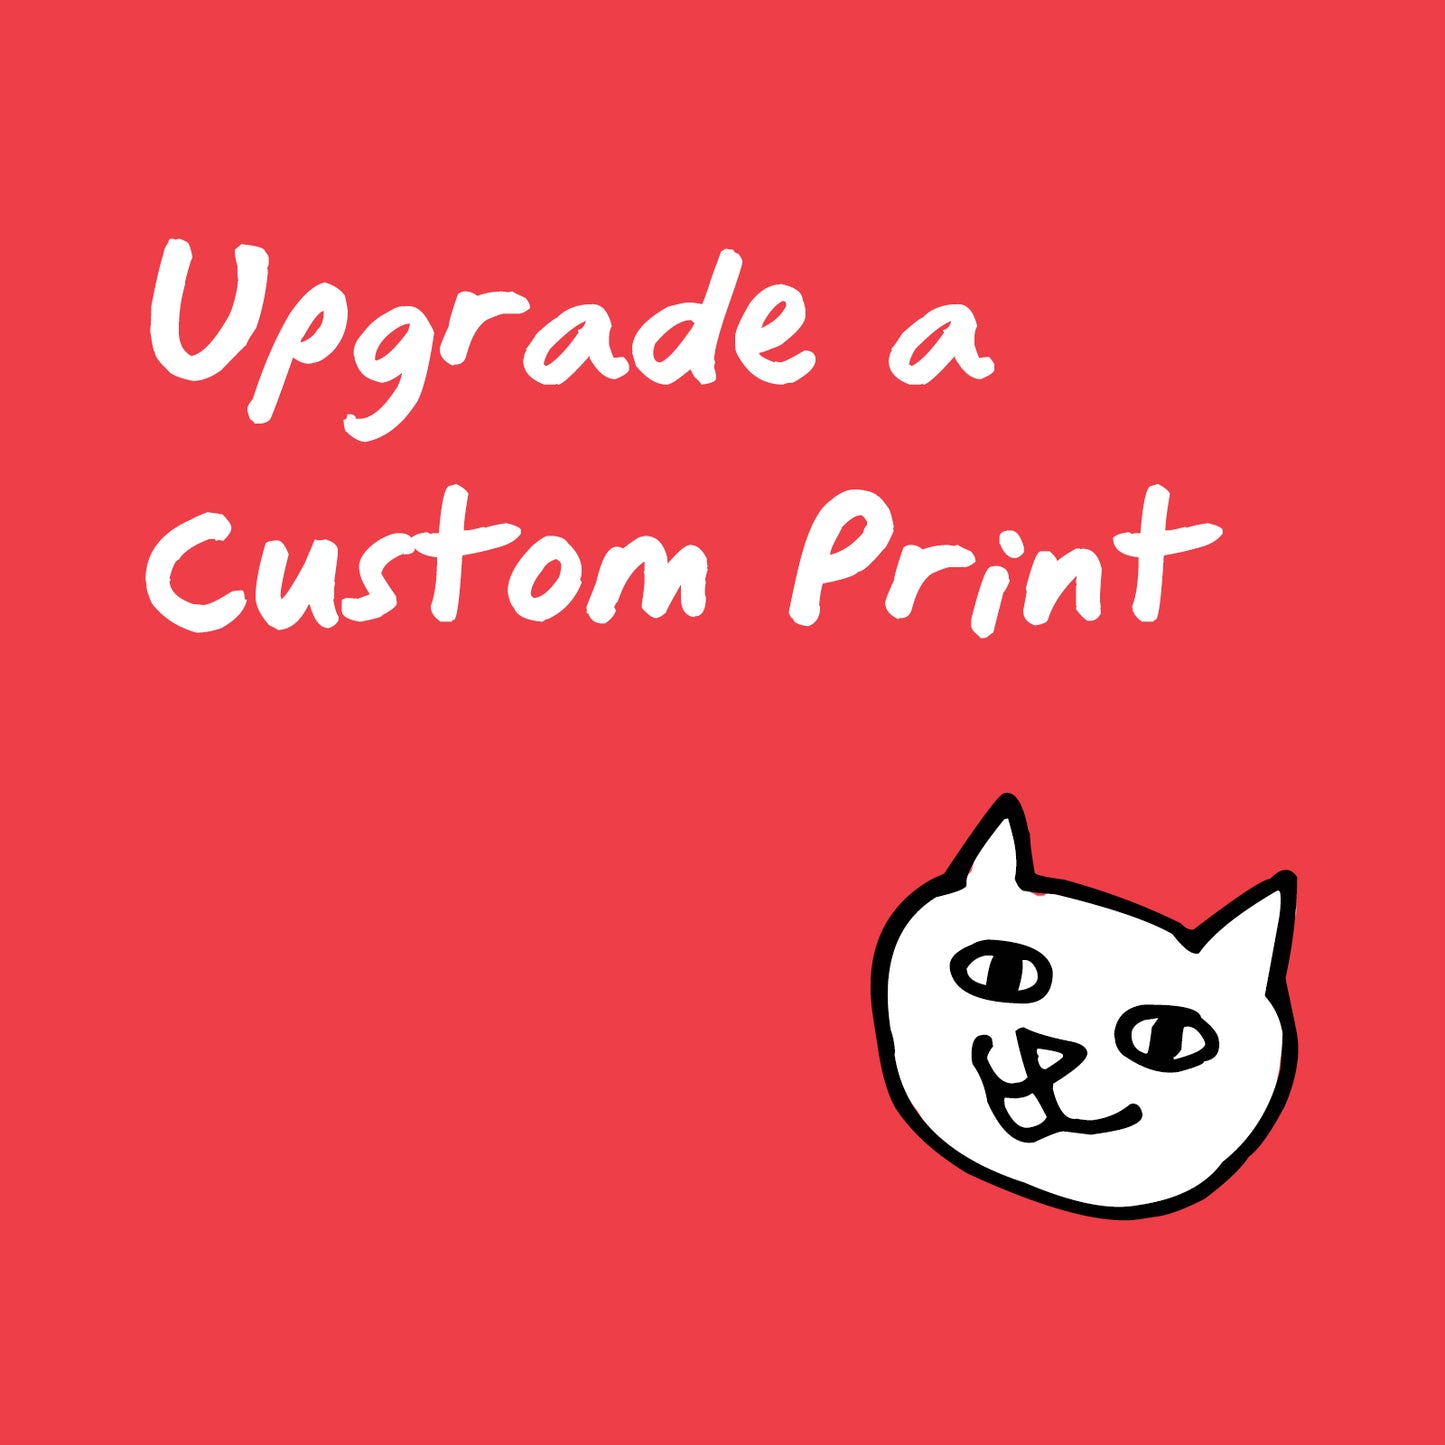 Custom Print Books Upgrade